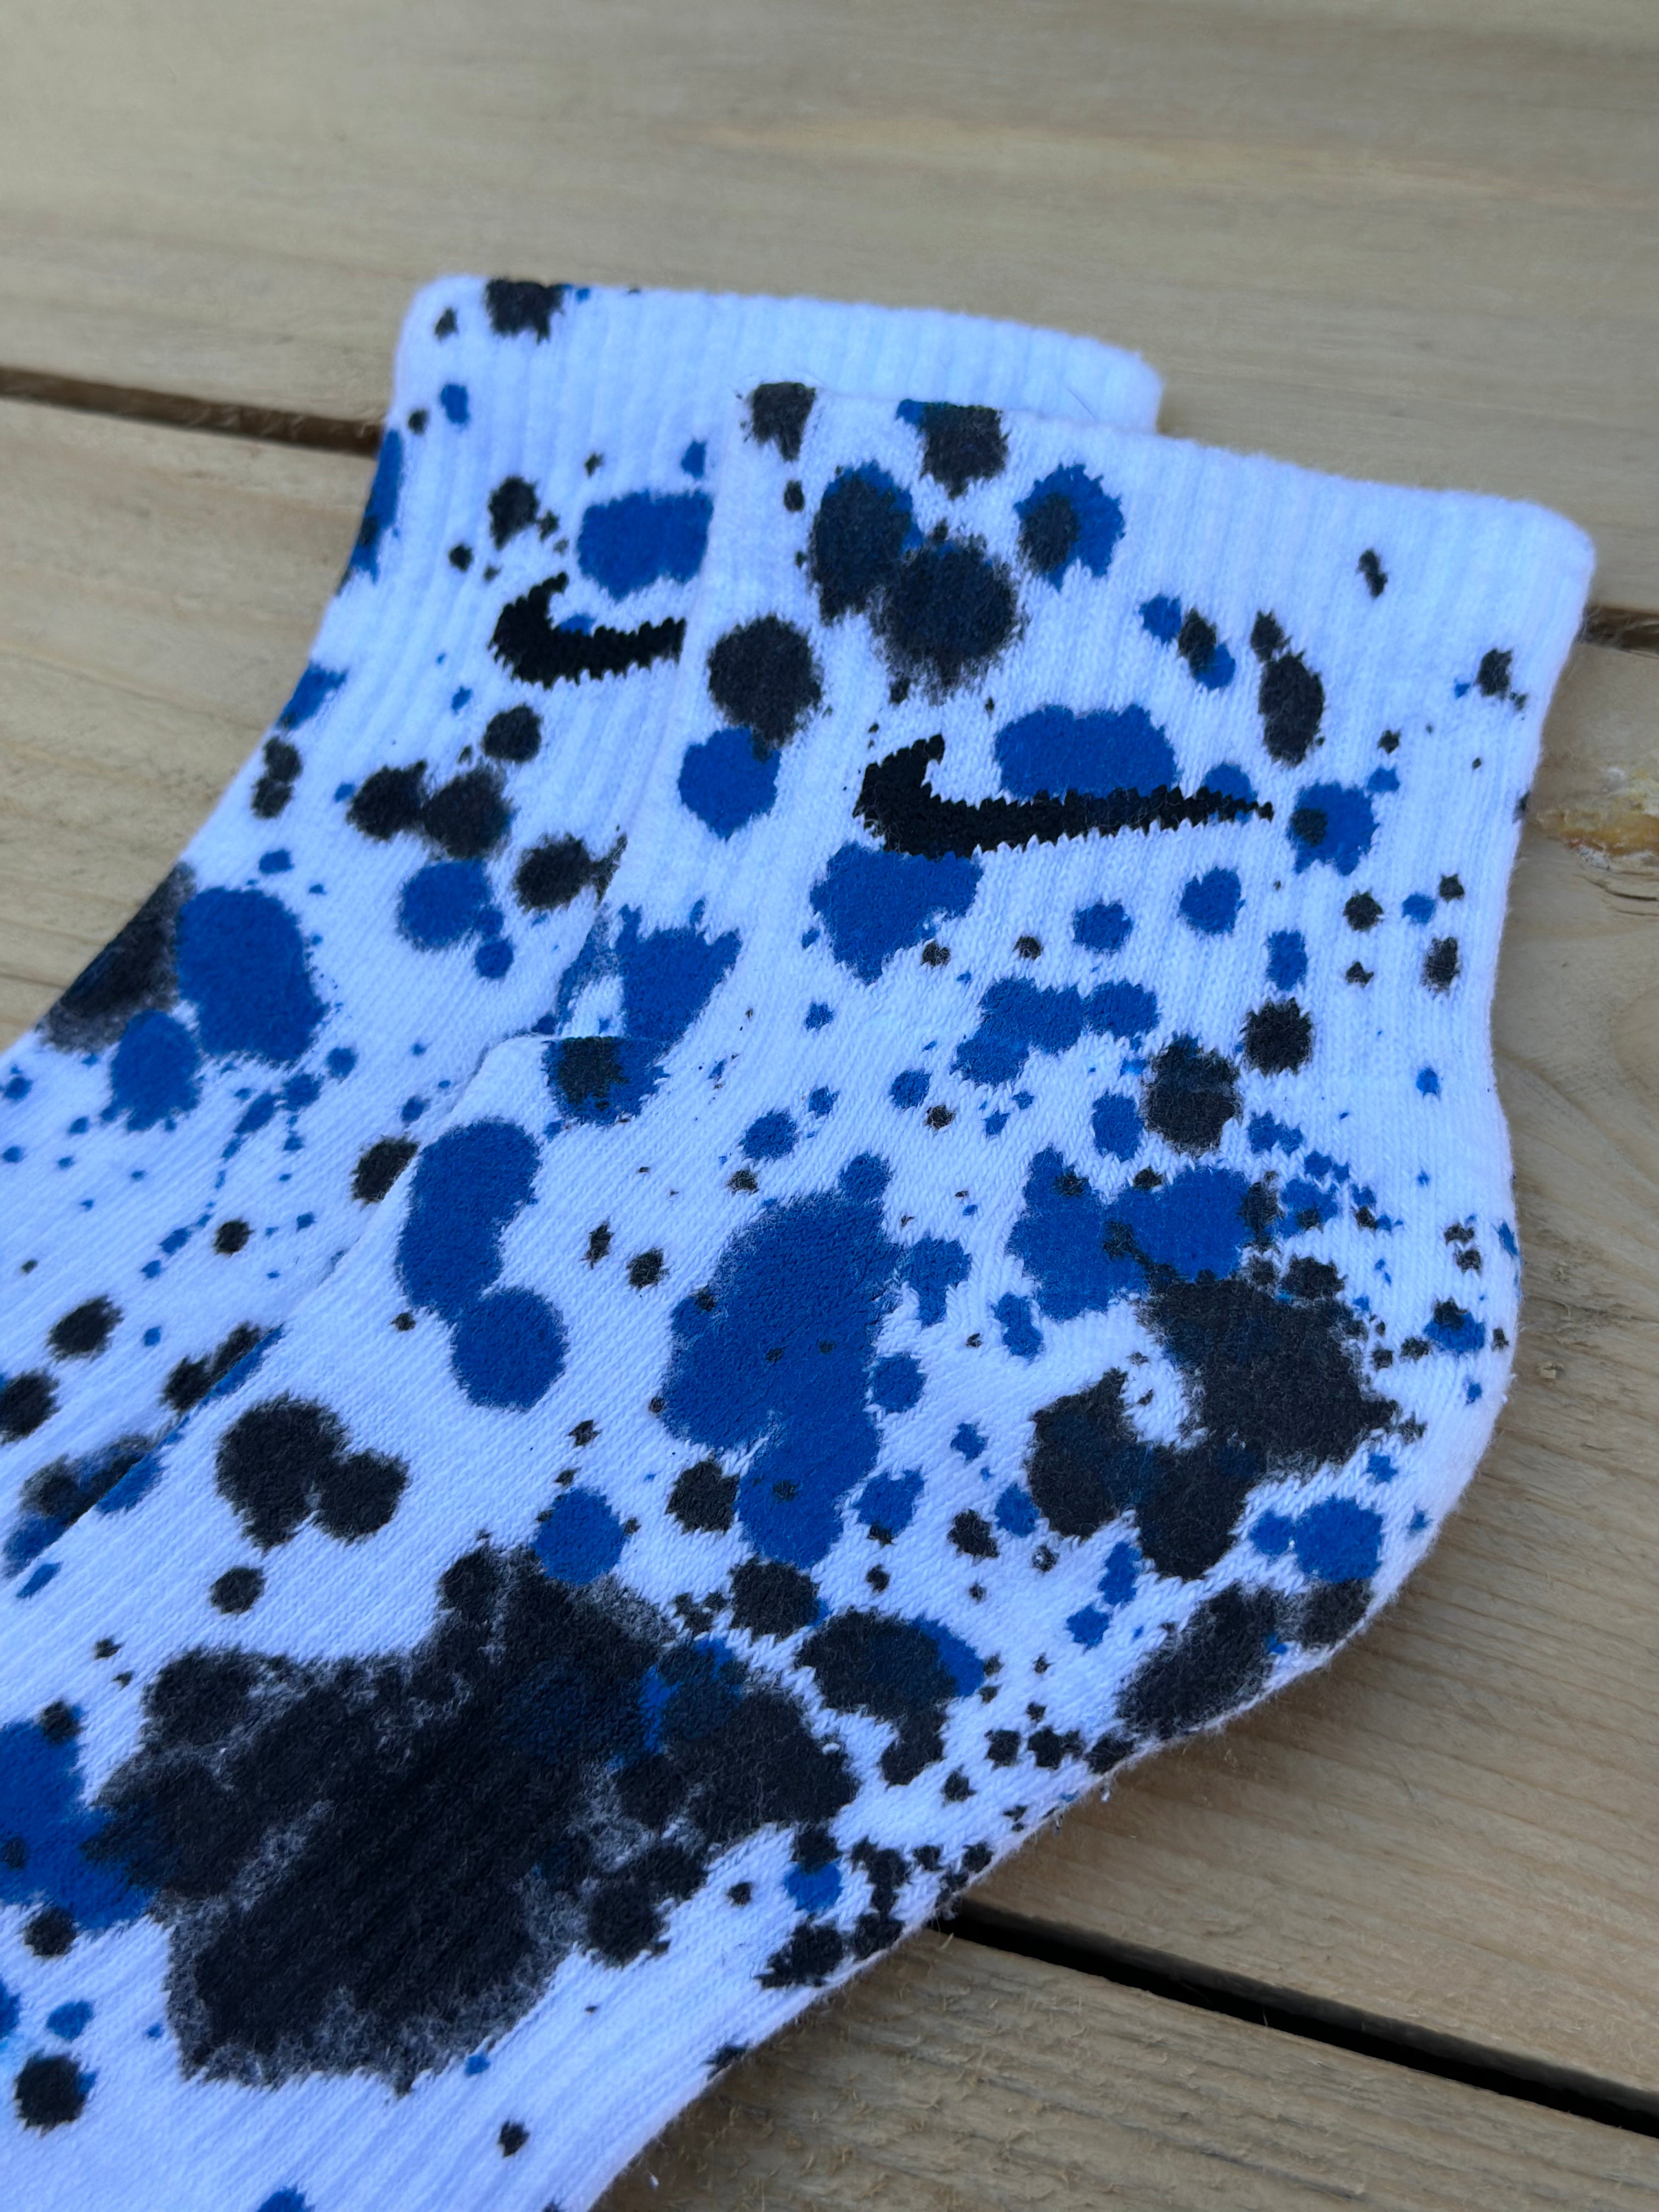 Black & Blue Paint Splattered Ankle Socks